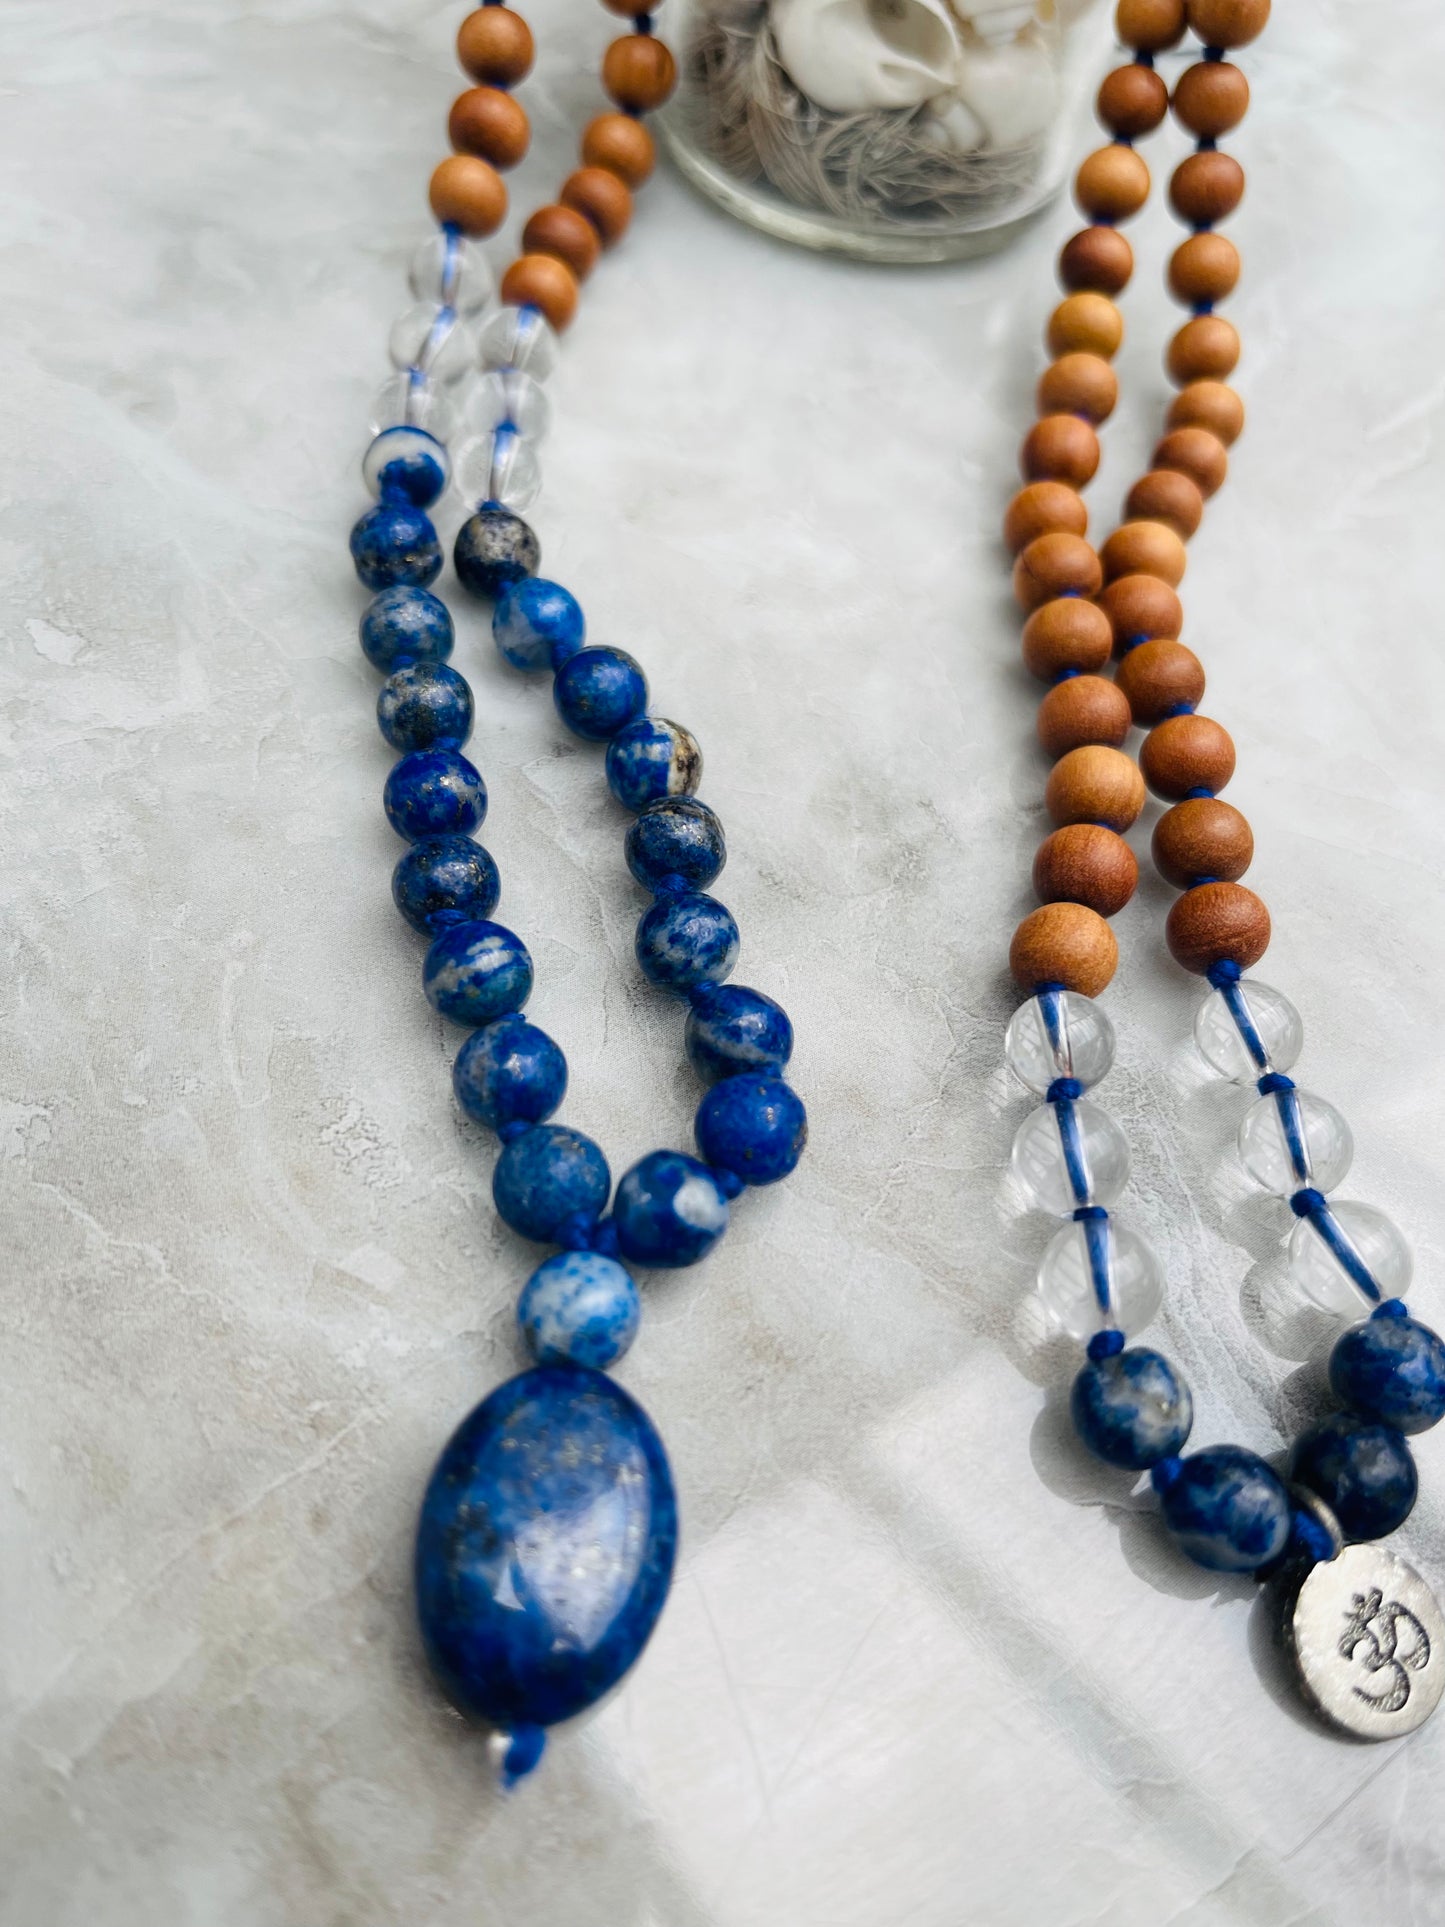 Sandalwood with Lapis Lazuli Japa Mala Crystal 108 beads OM mala with Lapis pendant purified & blessed Unisex Necklace Mens Women Japa Yoga